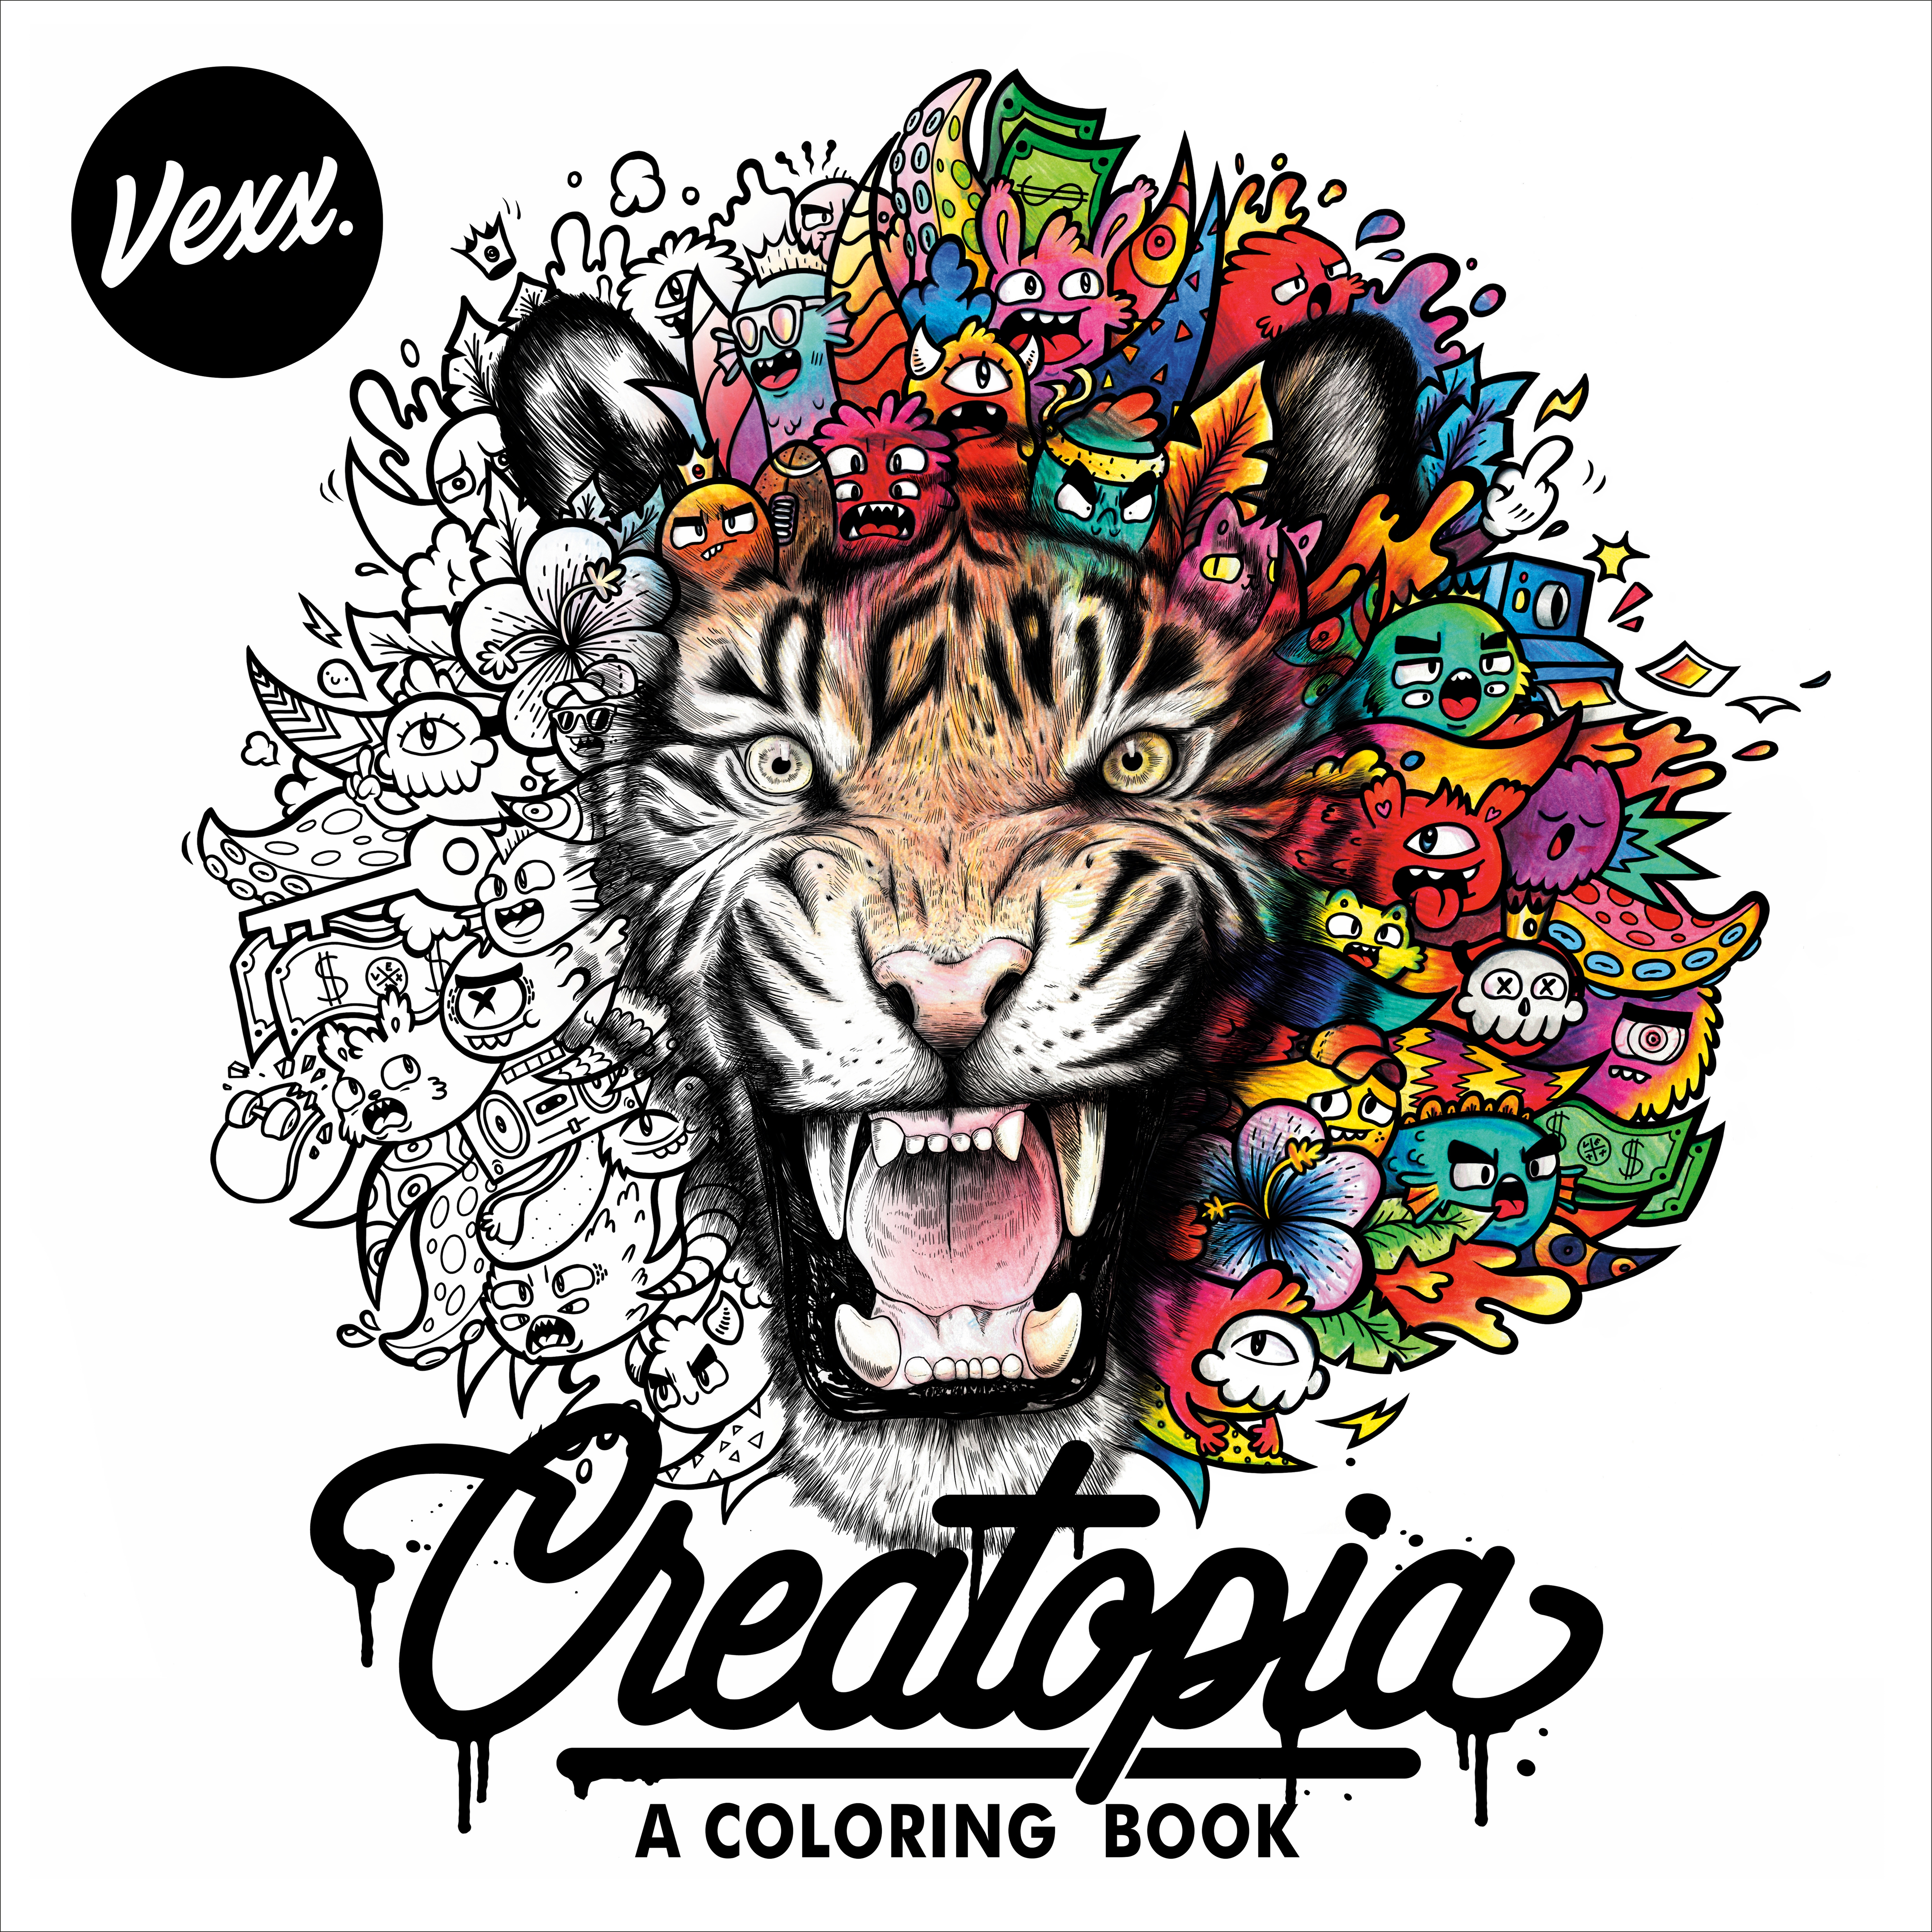 Download Creatopia A Coloring Book By Vexx Penguin Books Australia